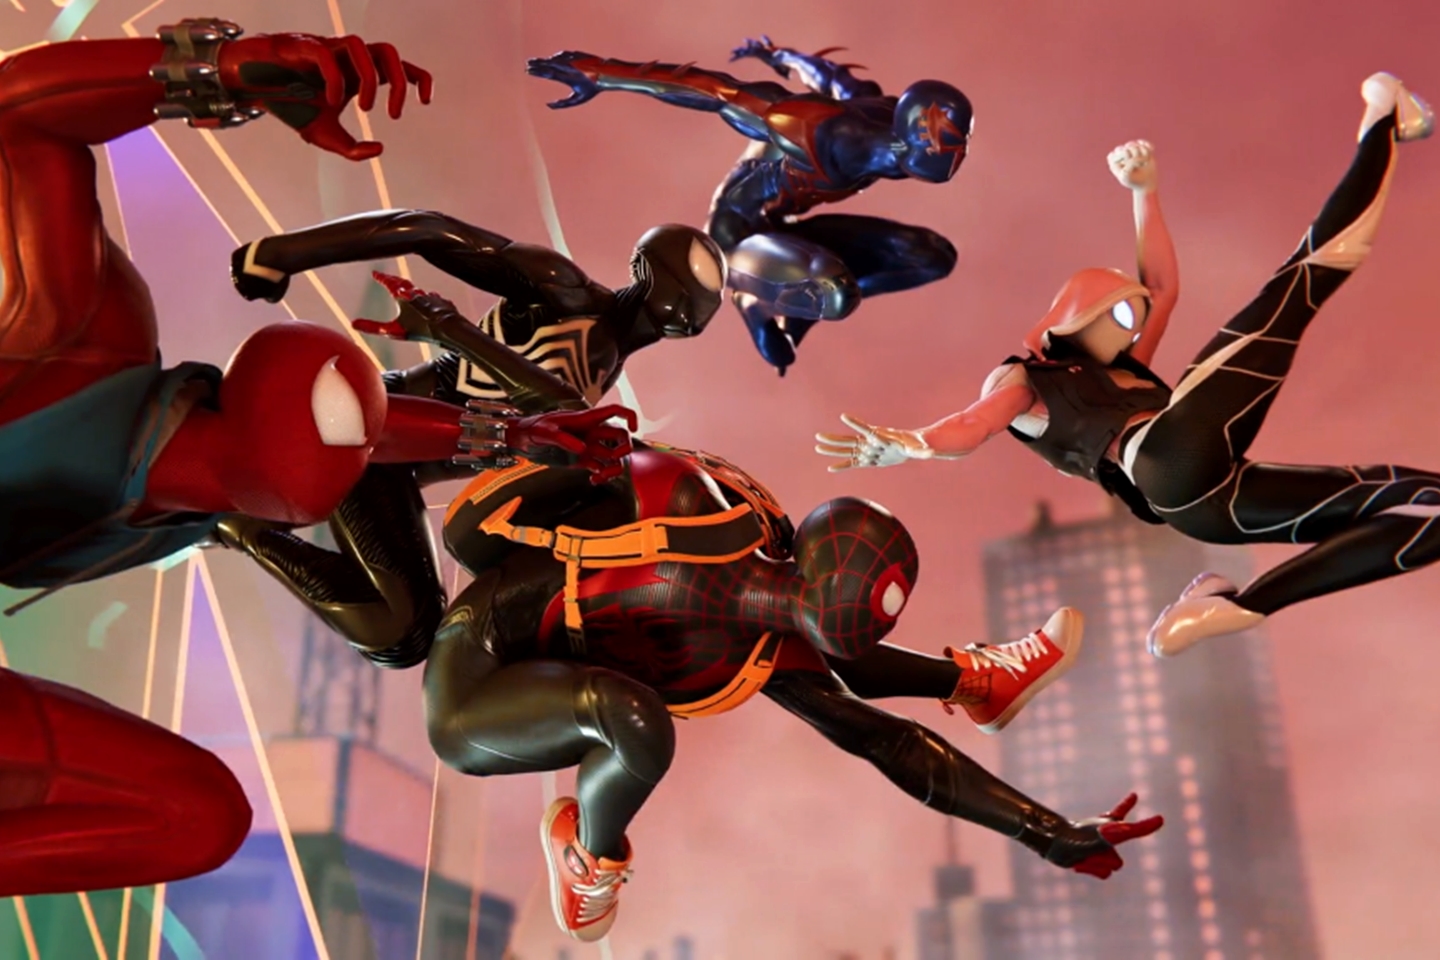 Spider-Man: The Great Web seria focado no multiplayer com cinco heróis do multiverso.